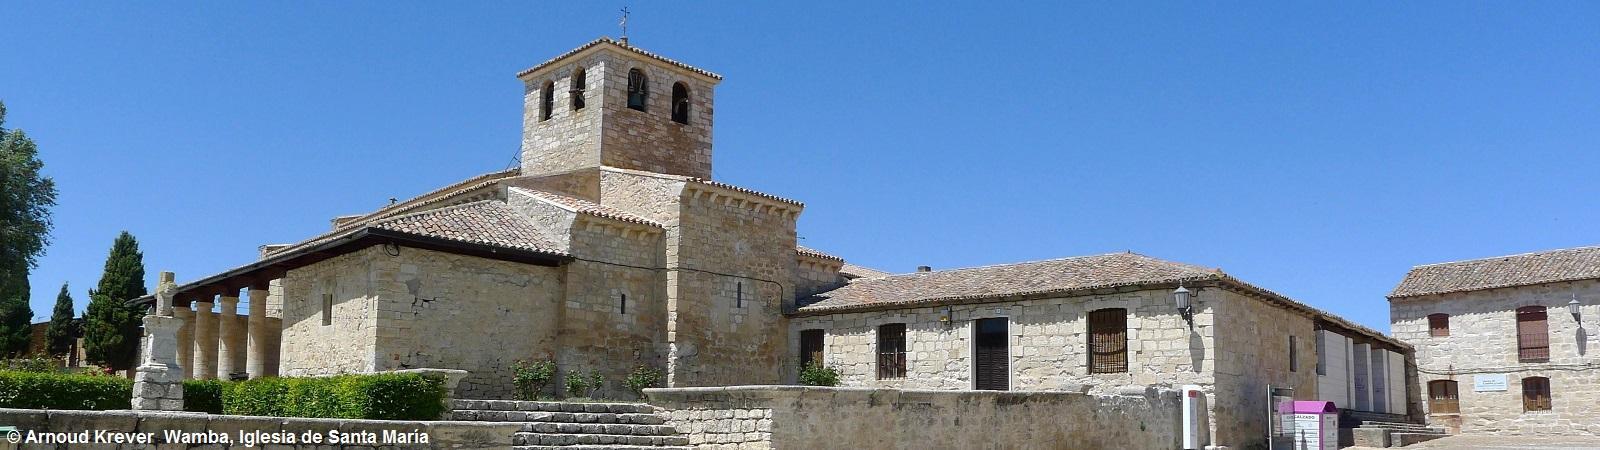 14CM (707) Wamba, Iglesia de Santa María (2)